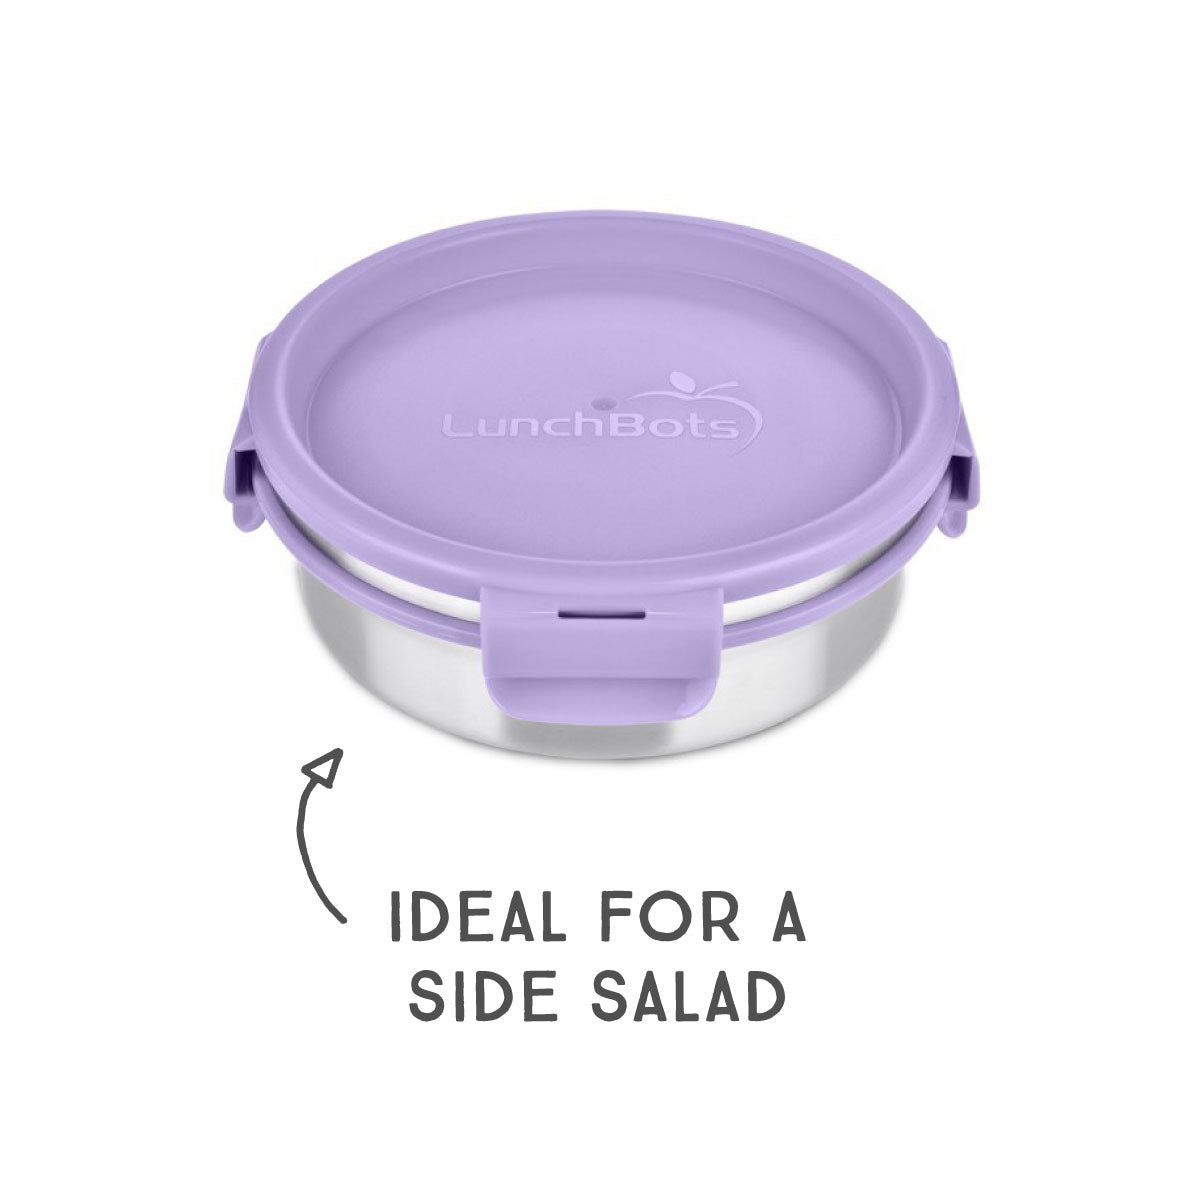 Exchange Select Disposable Containers Soup Salad Purple Lids 5 Pk